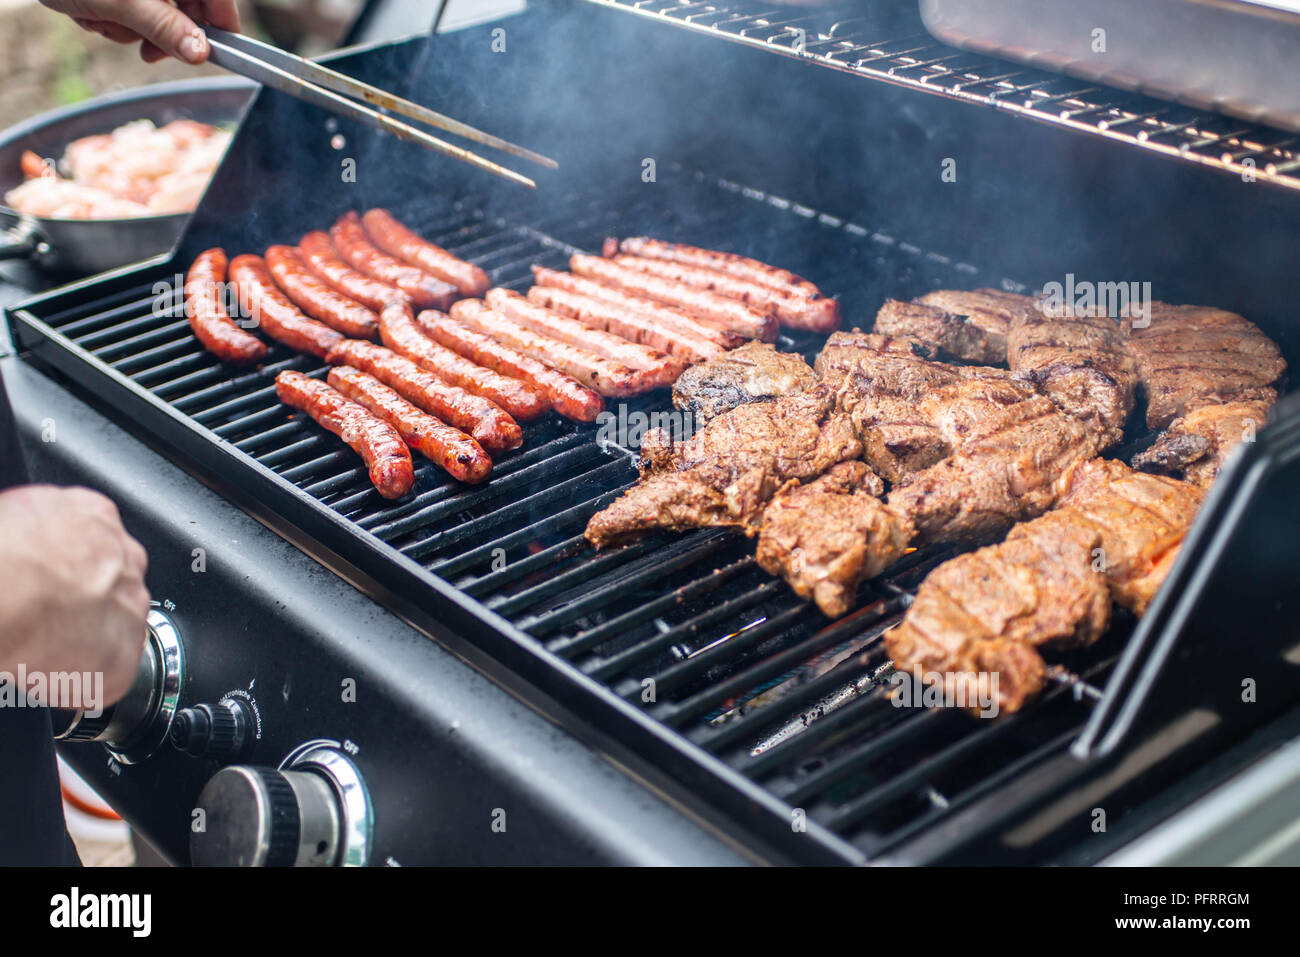 Barbecue Grill Bbq auf Propan-Gas-Grill. Steaks-Bratwurst-Würstchen-Fleisch-Mahlzeit  Stockfotografie - Alamy